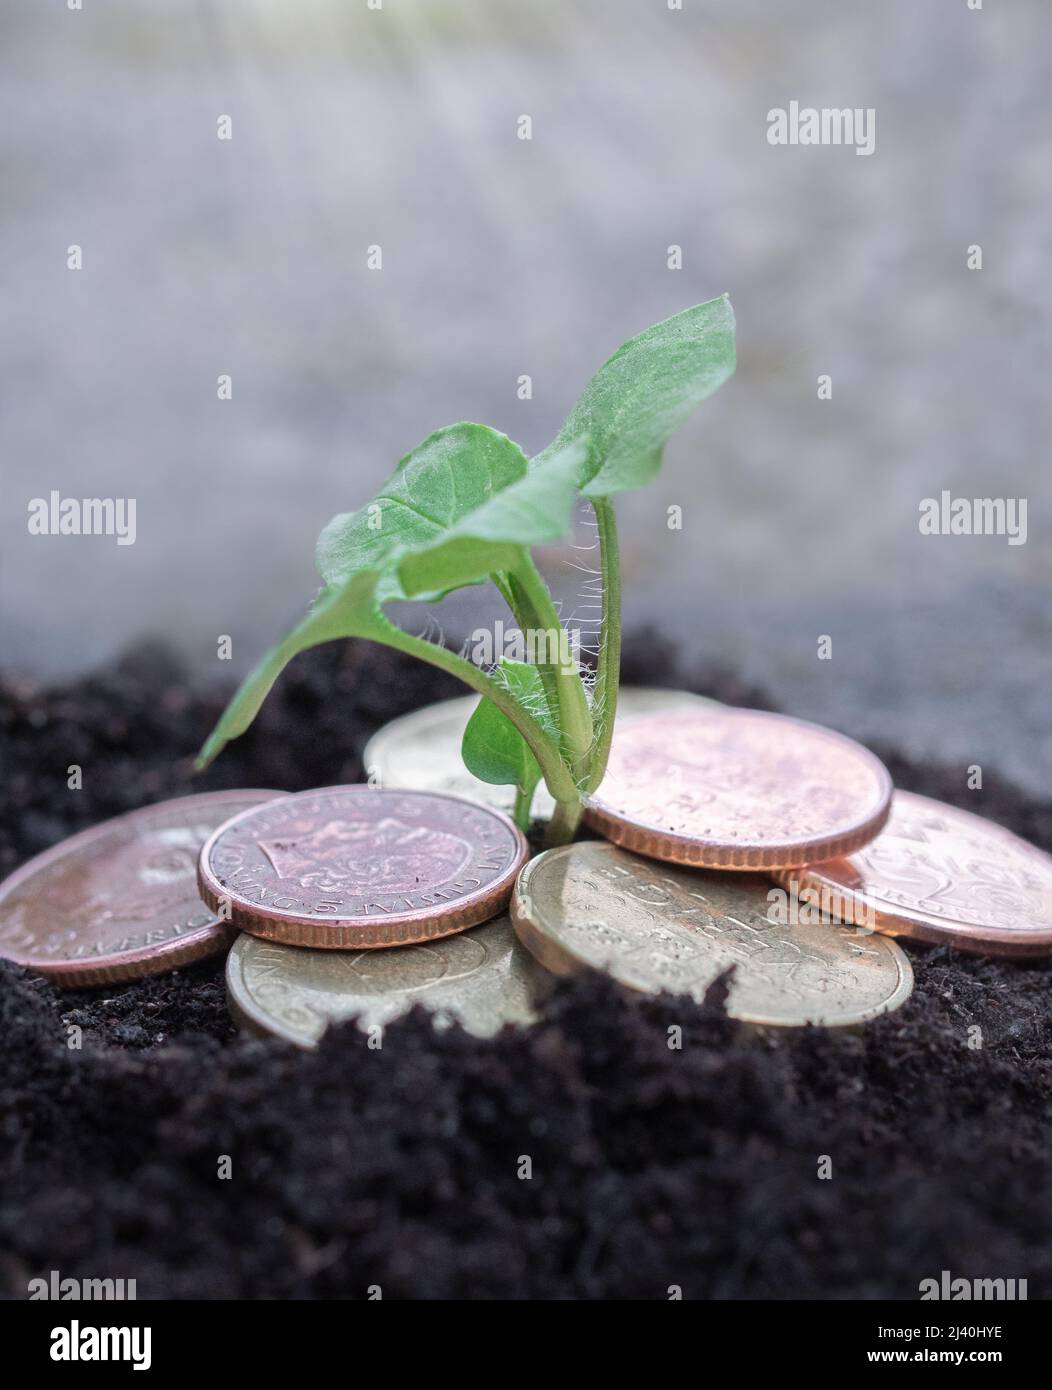 Foto di piccola pianta verde che cresce da monete o denaro Foto Stock